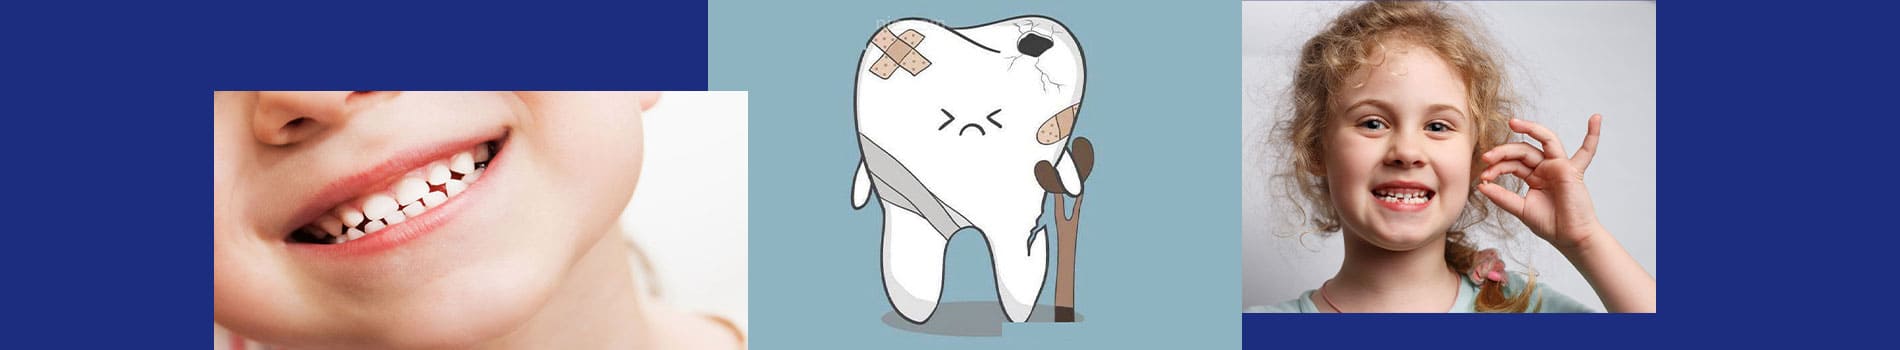 چه عواملی سبب آسیب دیدن دندان های شیری می شوند؟